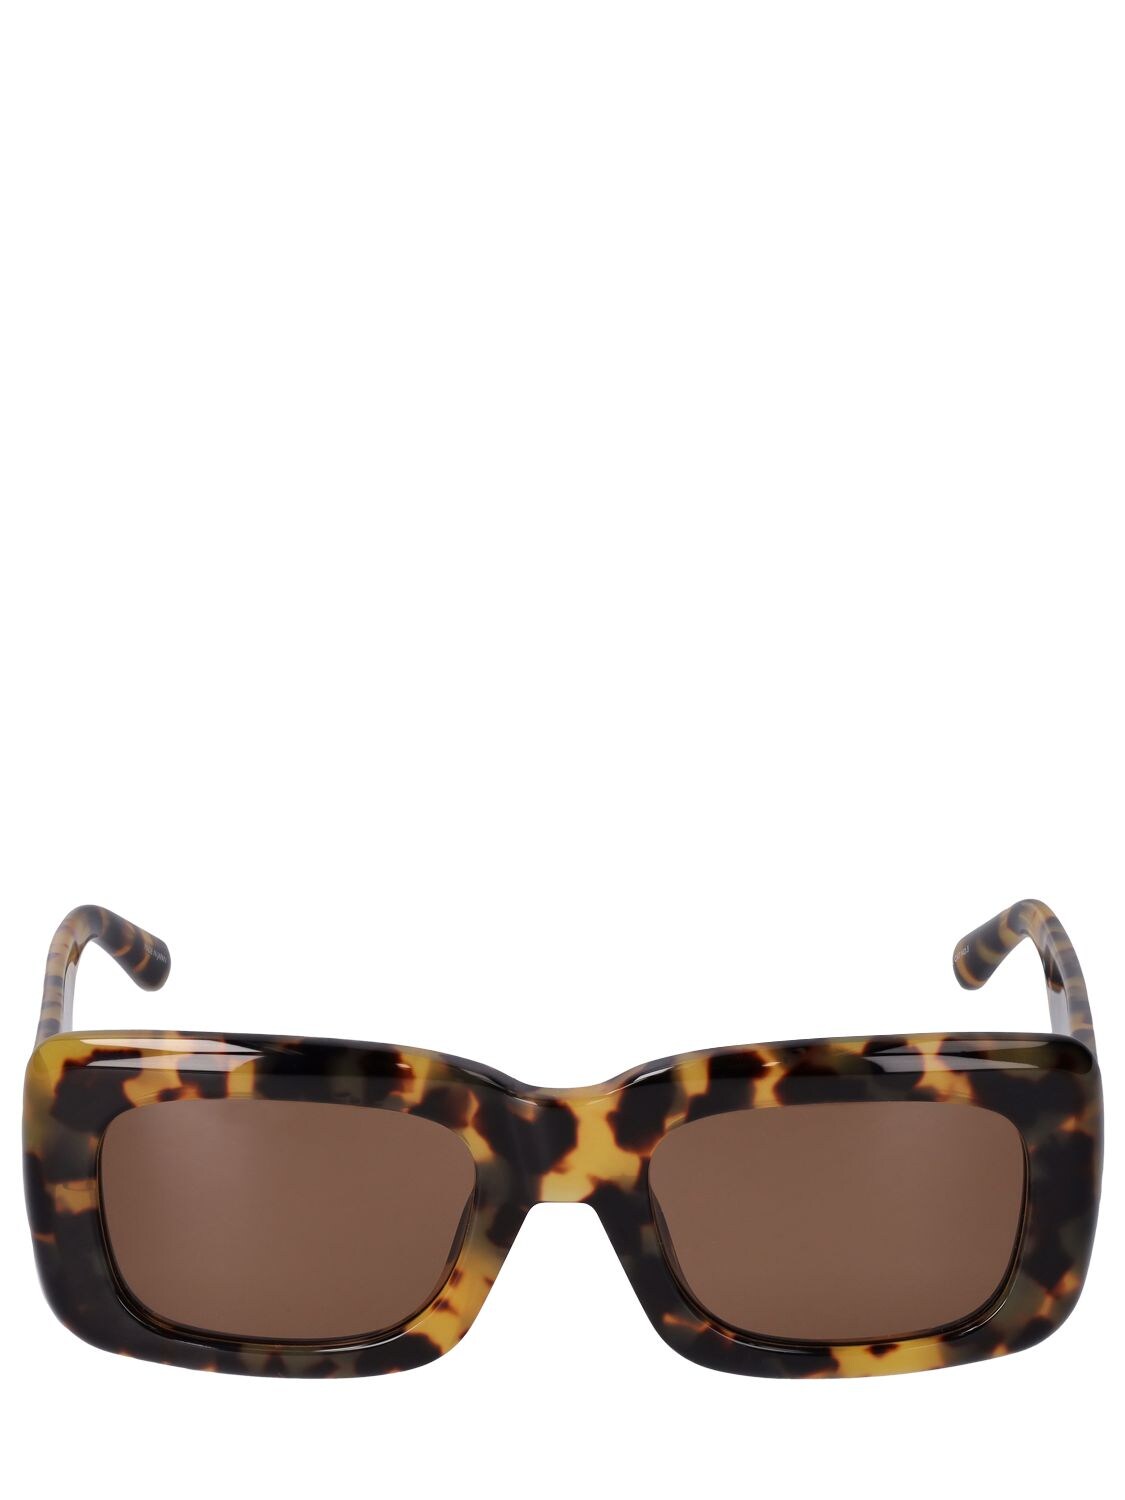 Shop Attico Marfa Squared Acetate Sunglasses In T-shell,brown